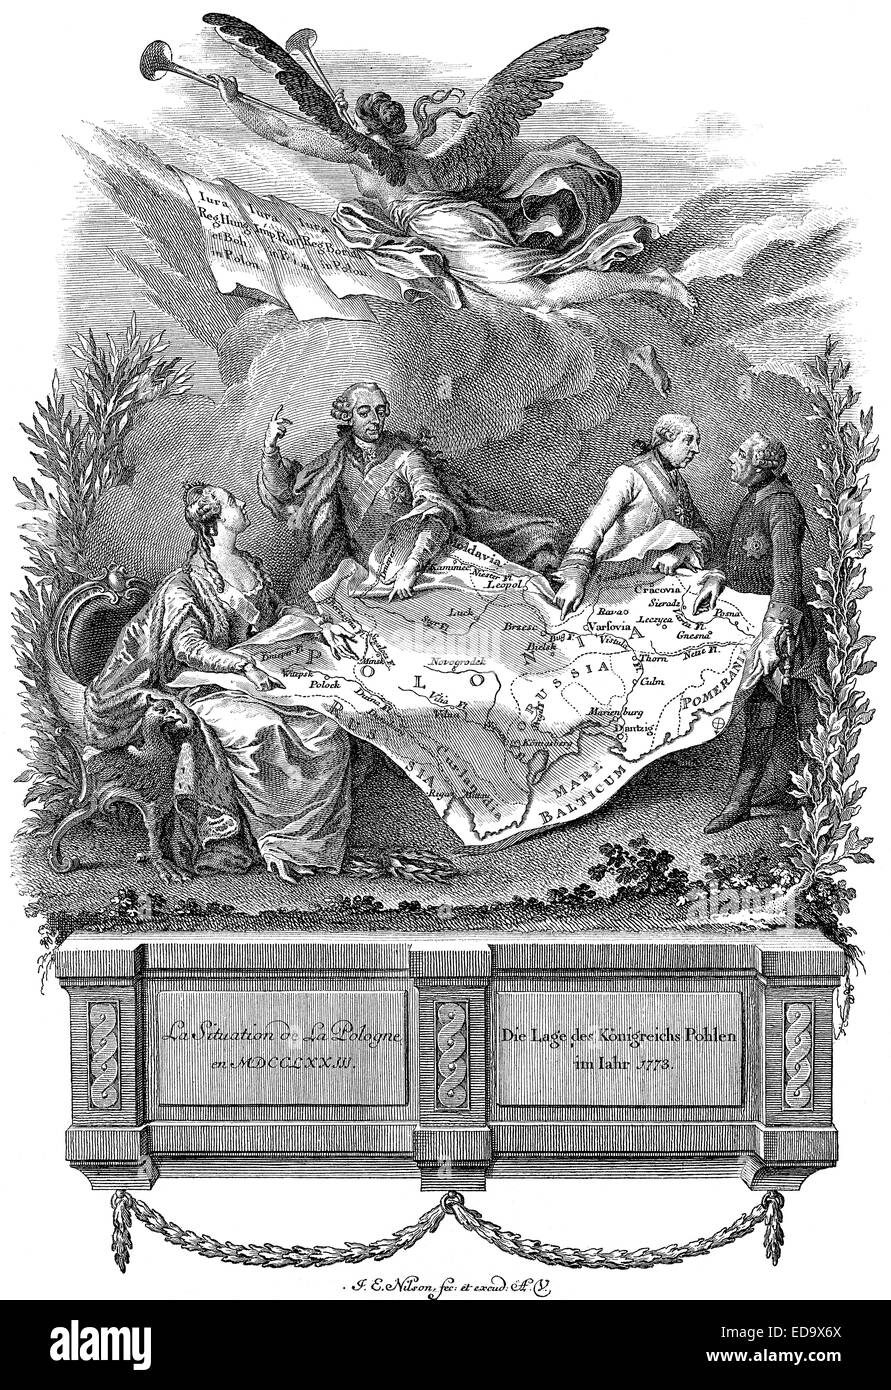 La situazione in Polonia nell'anno 1773, allegoria sulla prima partizione della Polonia tra Russia, Austria e Prussia, Zari Foto Stock